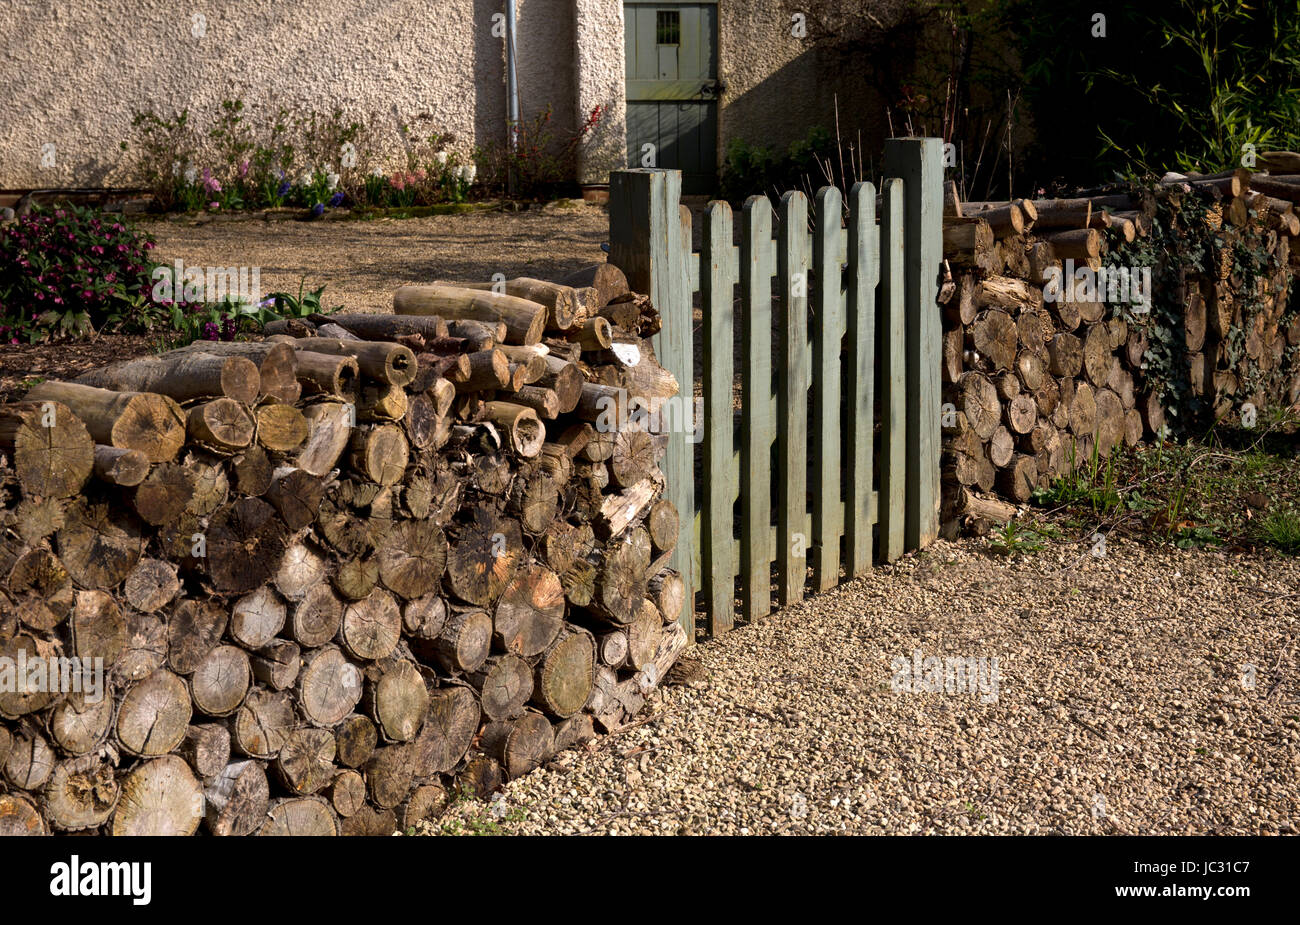 Avant de porte de chambre avec du bois de sciage utilisé comme clôture,jardin anglais, Angleterre Banque D'Images